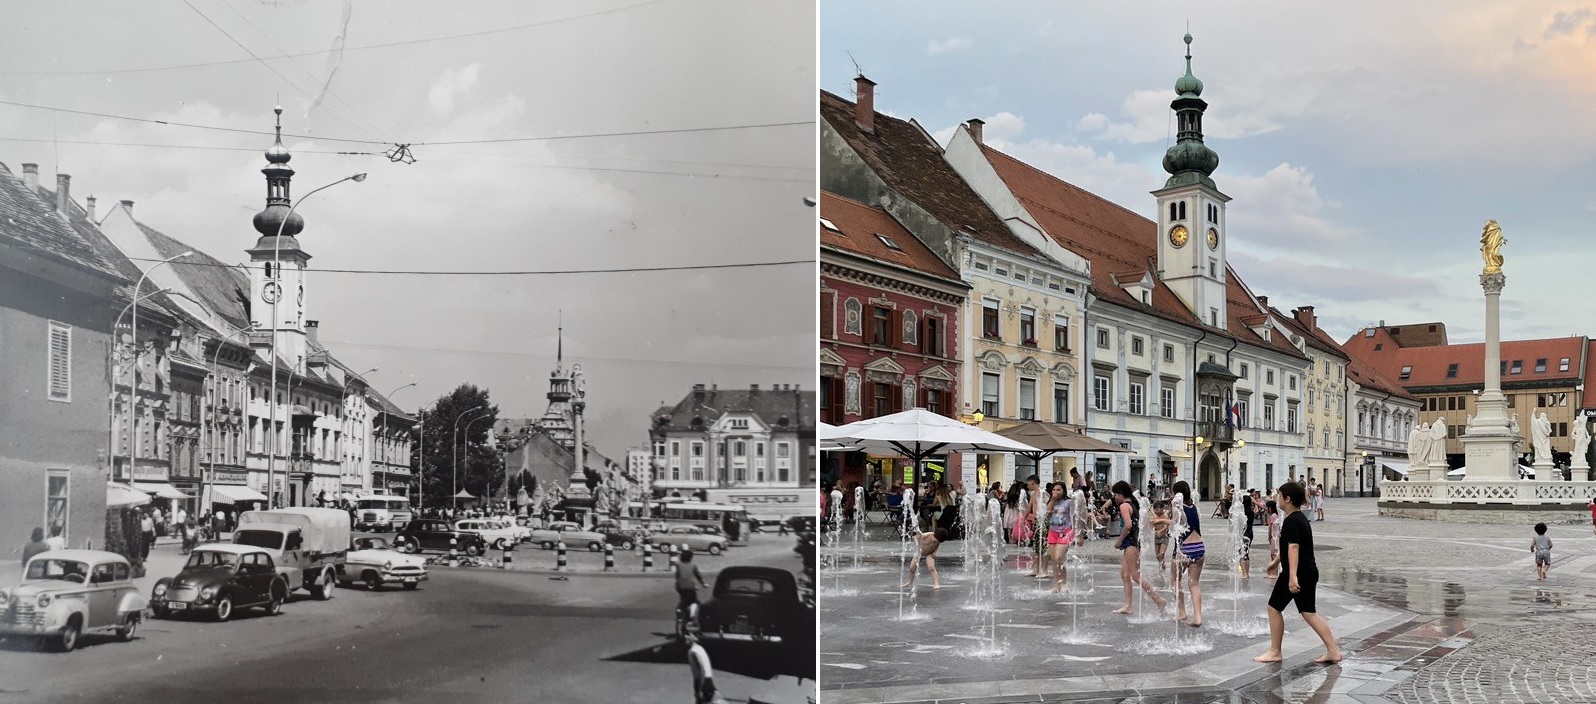 DNEVNA: Maribor nekoč in danes: Od trgov v mestu do ulice, ki je več ni